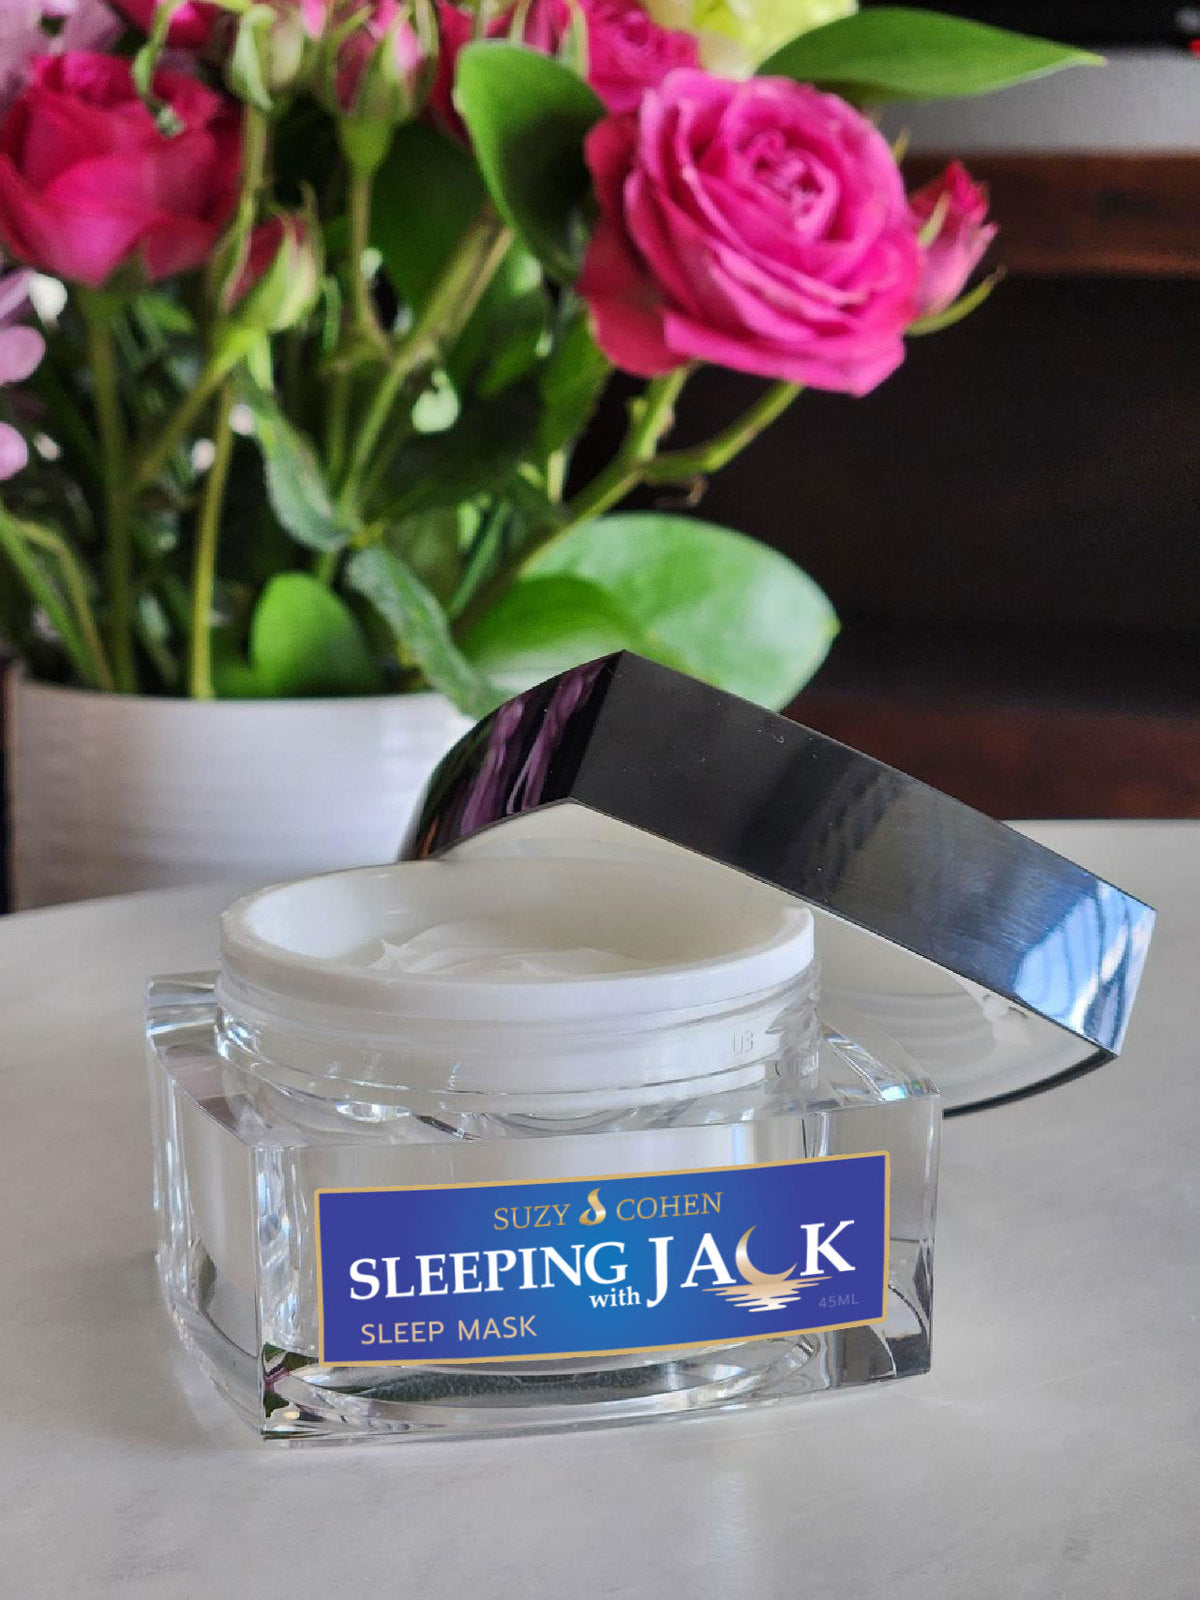 Sleeping with Jack Sleep Mask Cream - Suzy Cohen